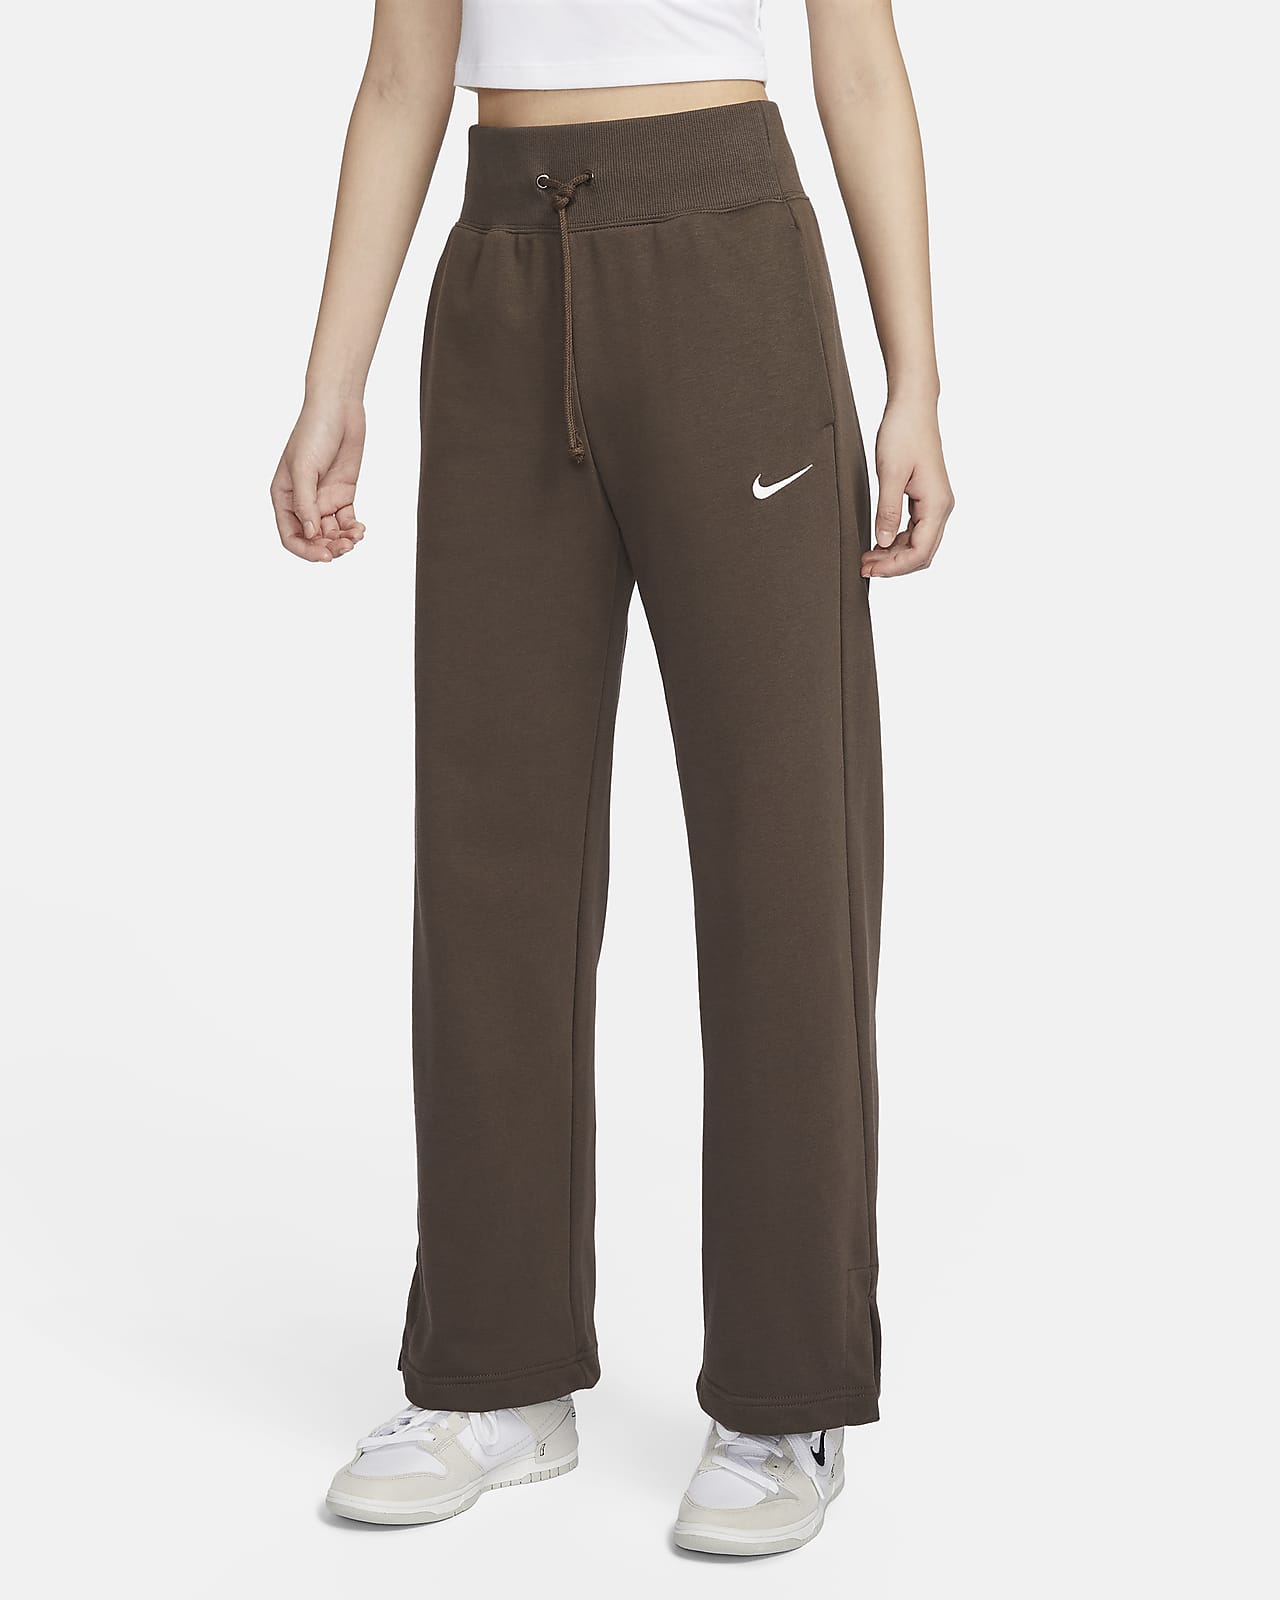 Nike Sportswear Phoenix Fleece Women's High-Waisted Wide-Leg French Terry Sweatpants